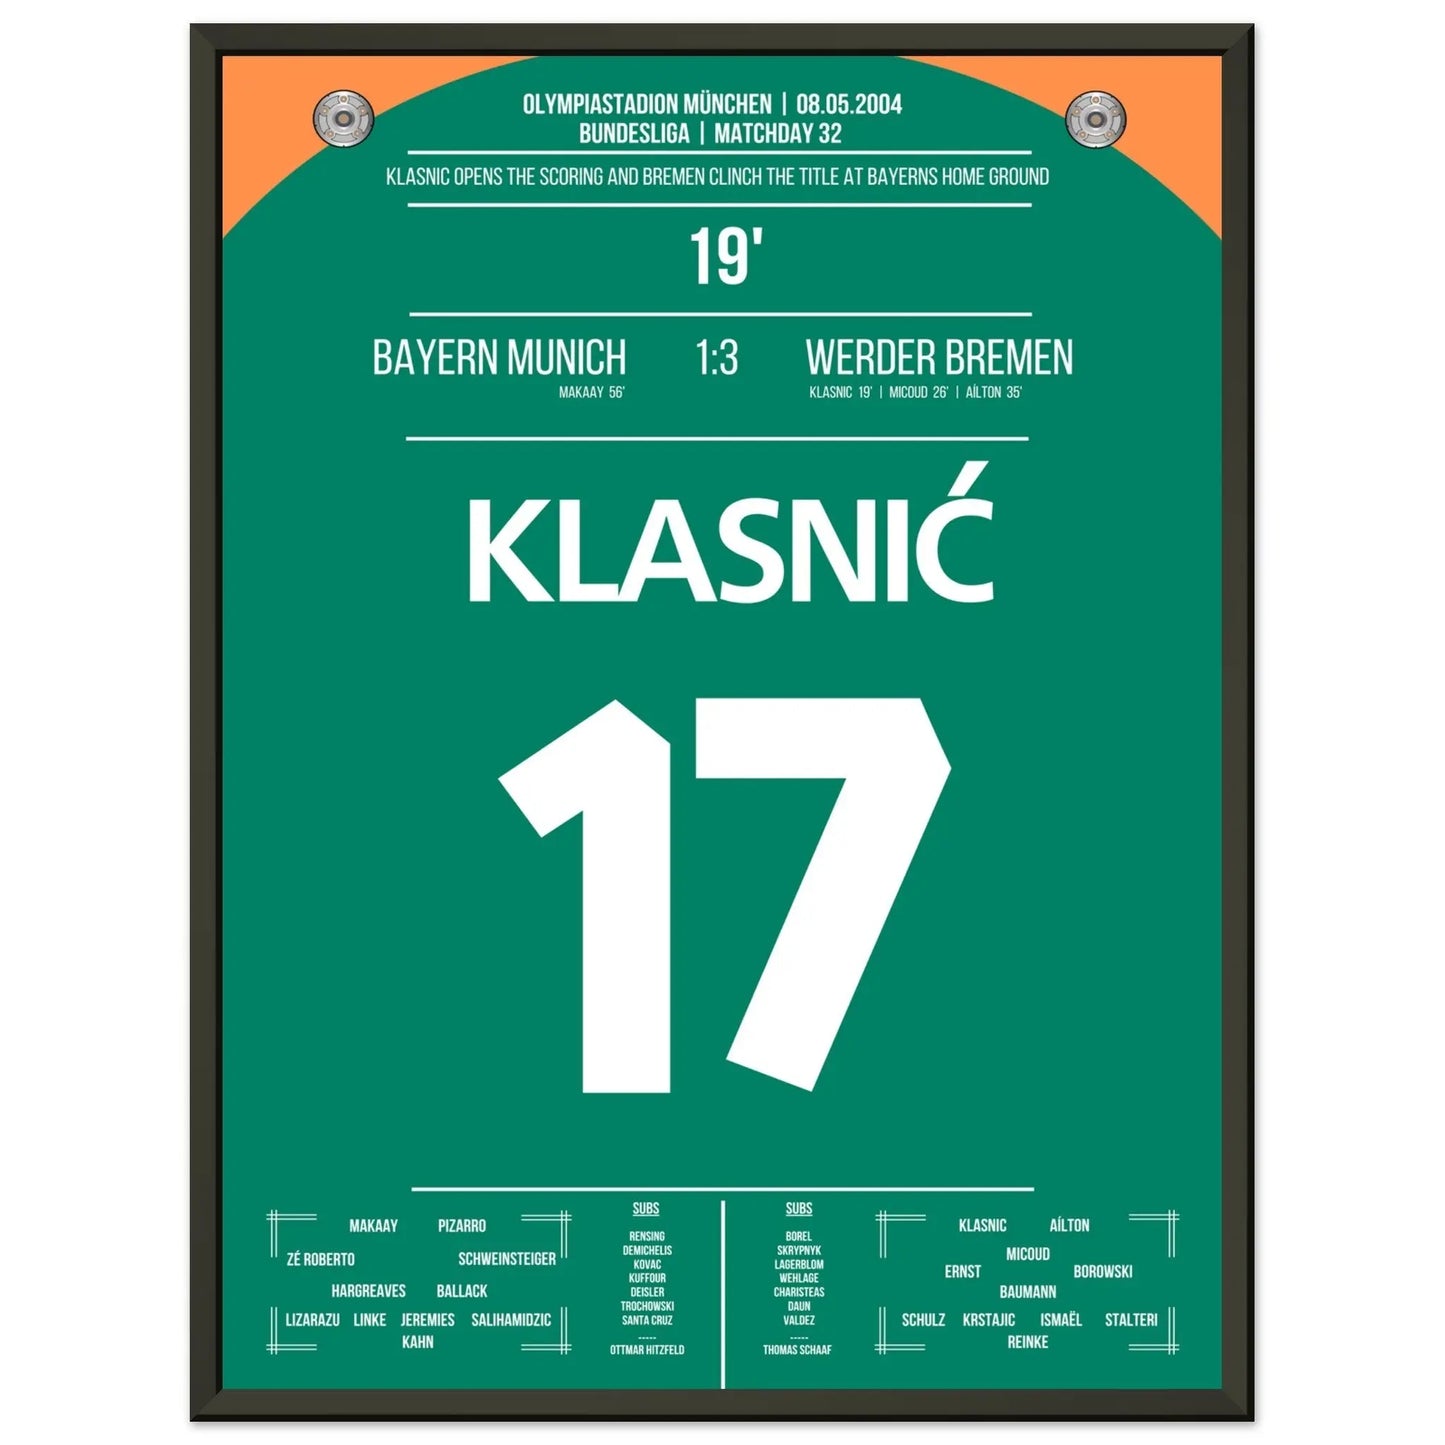 Klasnic's Treffer beim Meisterschaftsgewinn in München 2004